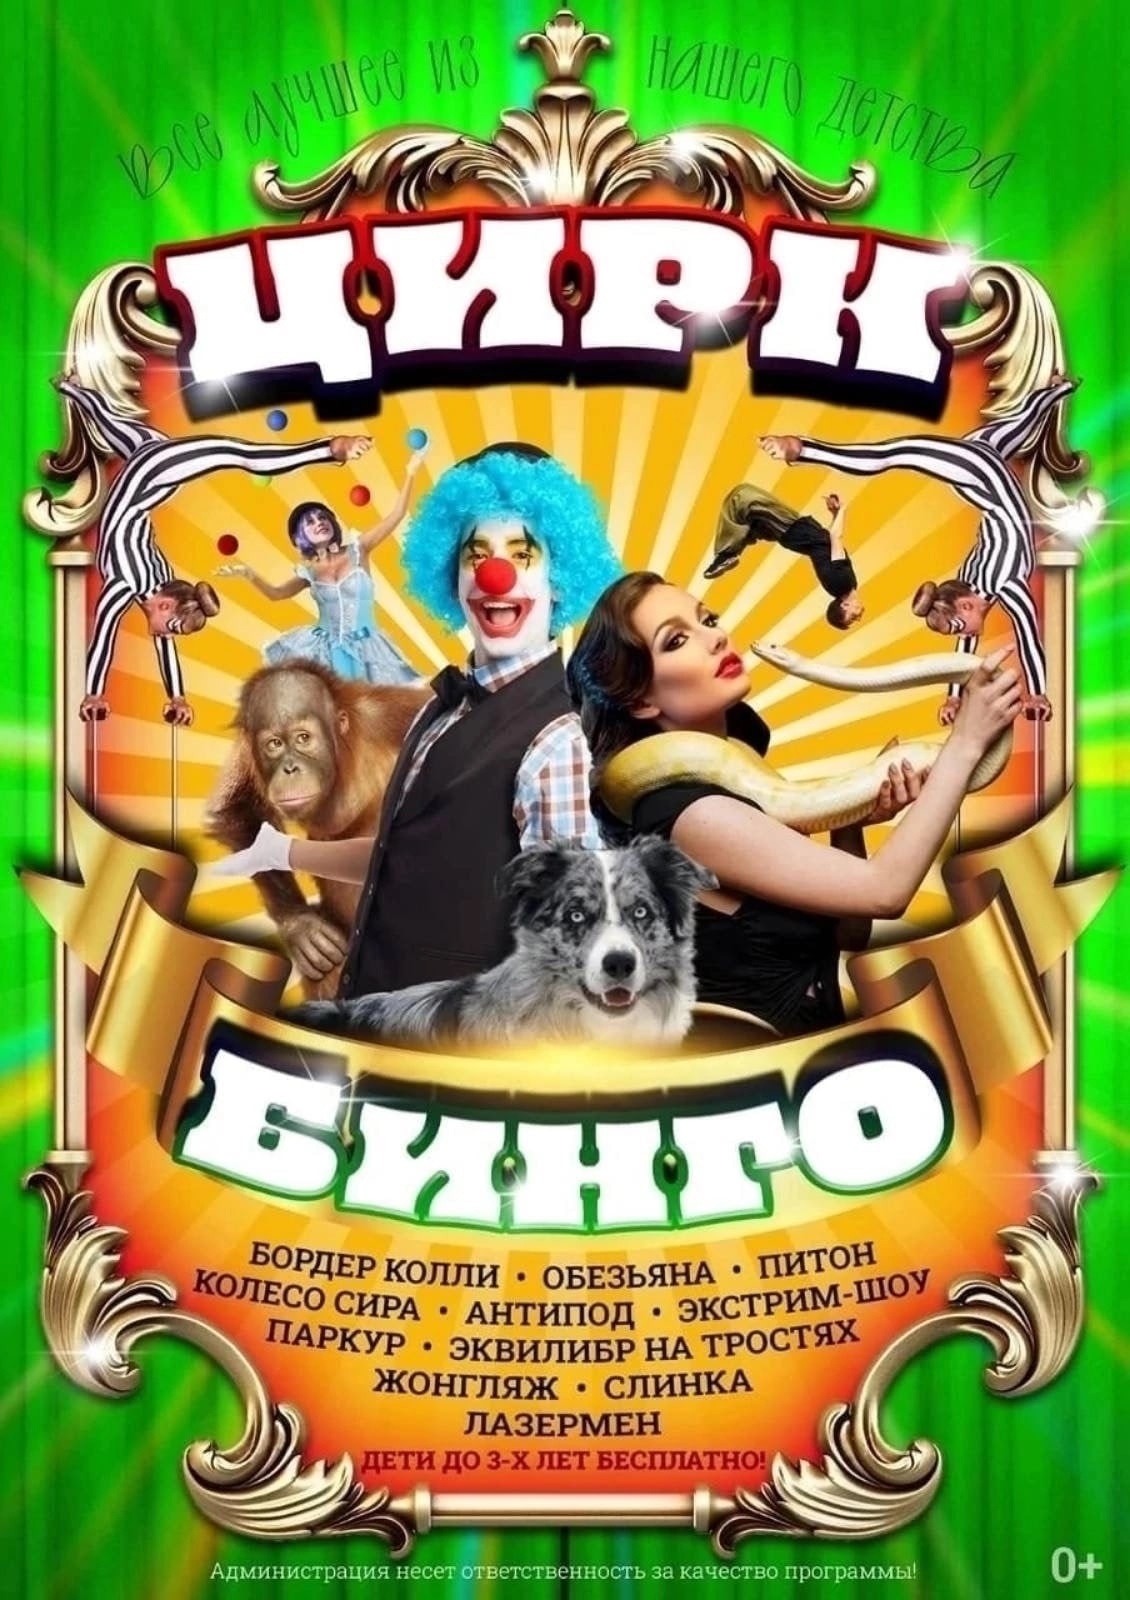 Цирк "Бинго" в Гороховце!